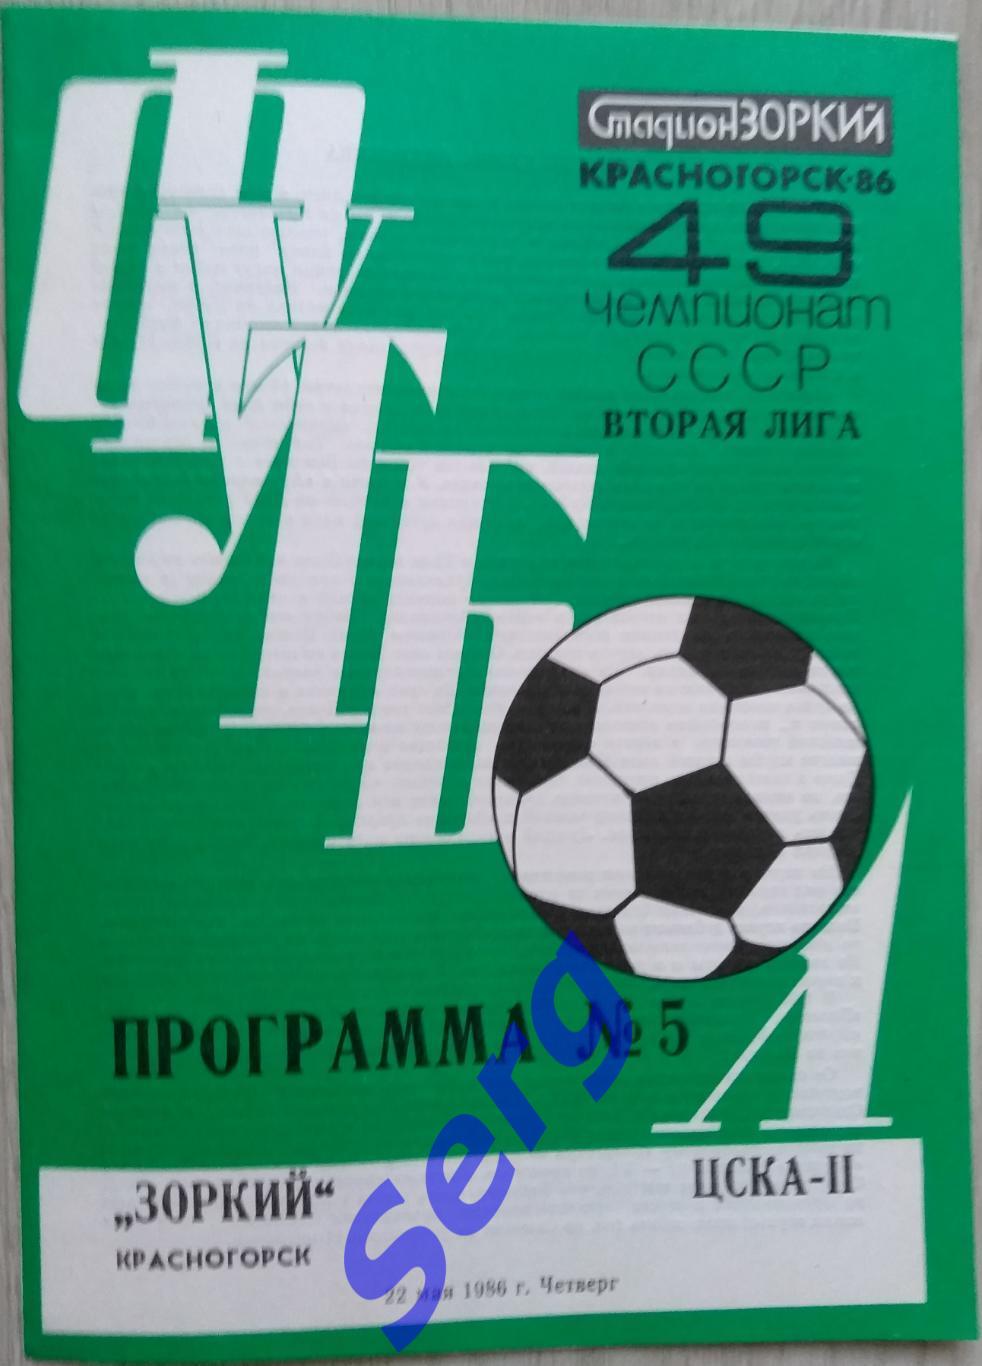 Зоркий Красногорск - ЦСКА-II Москва - 22 мая 1986 год